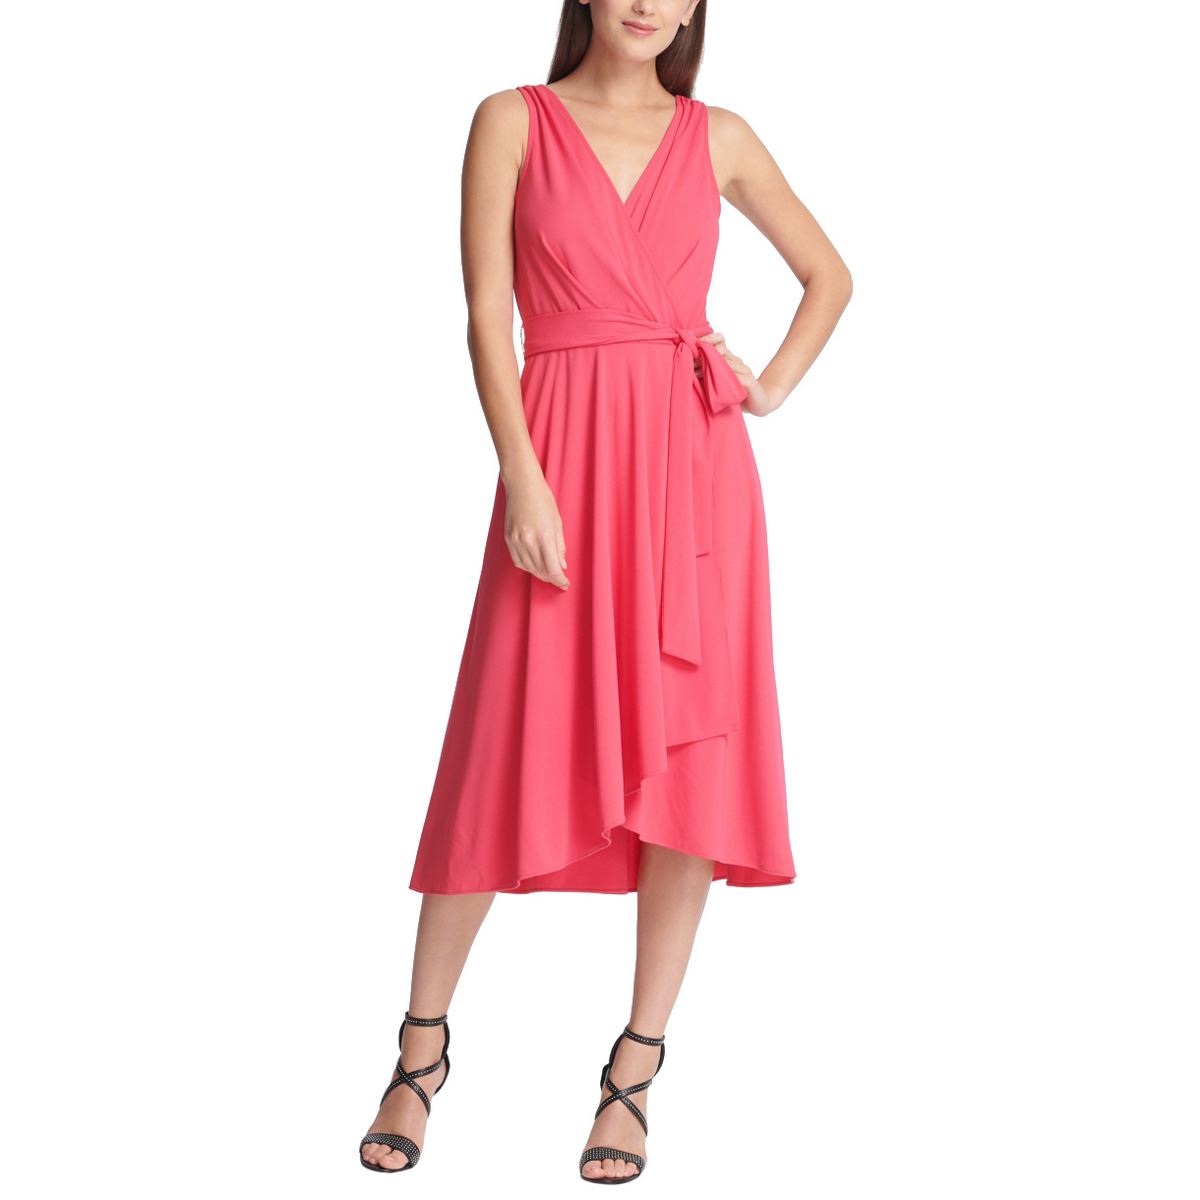 DKNY NEW Women's Hot Pink Jersey Belted Handkerchief Faux Wrap Dress 14 ...